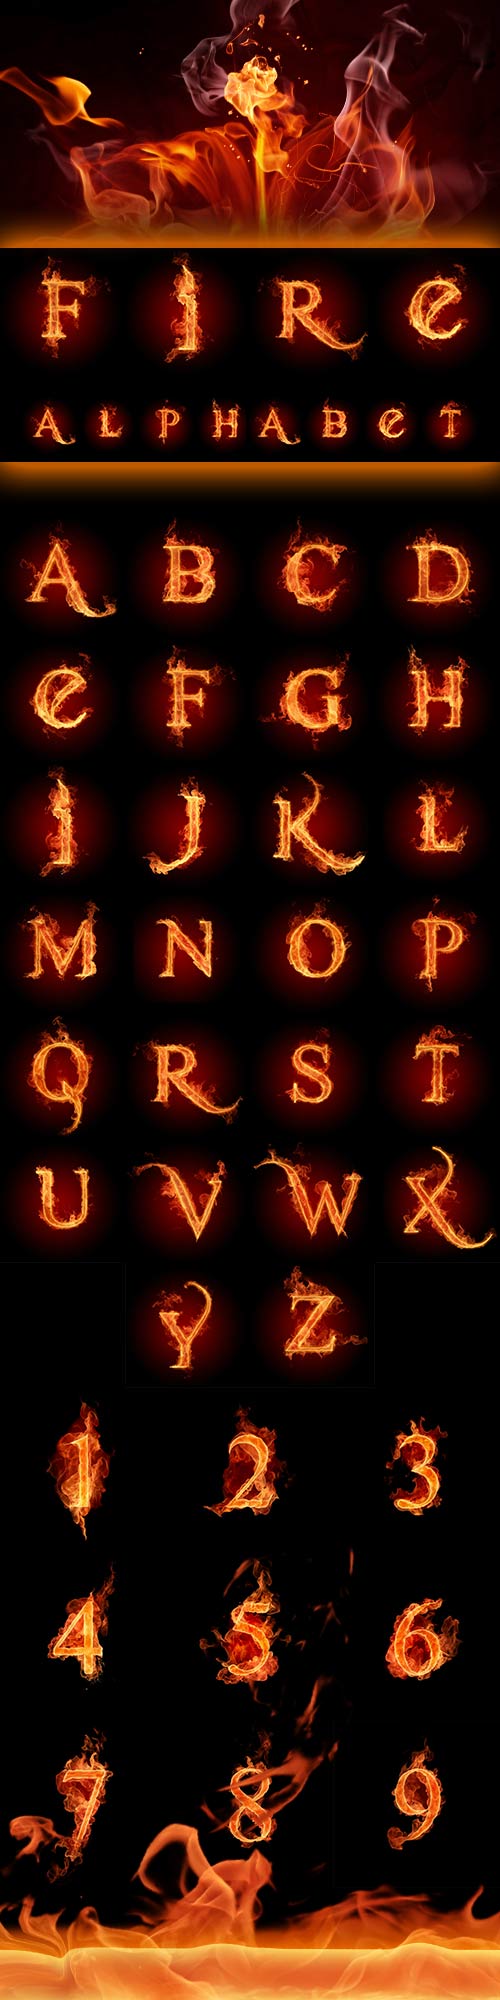 The alphabet of fire JPEG + PSD